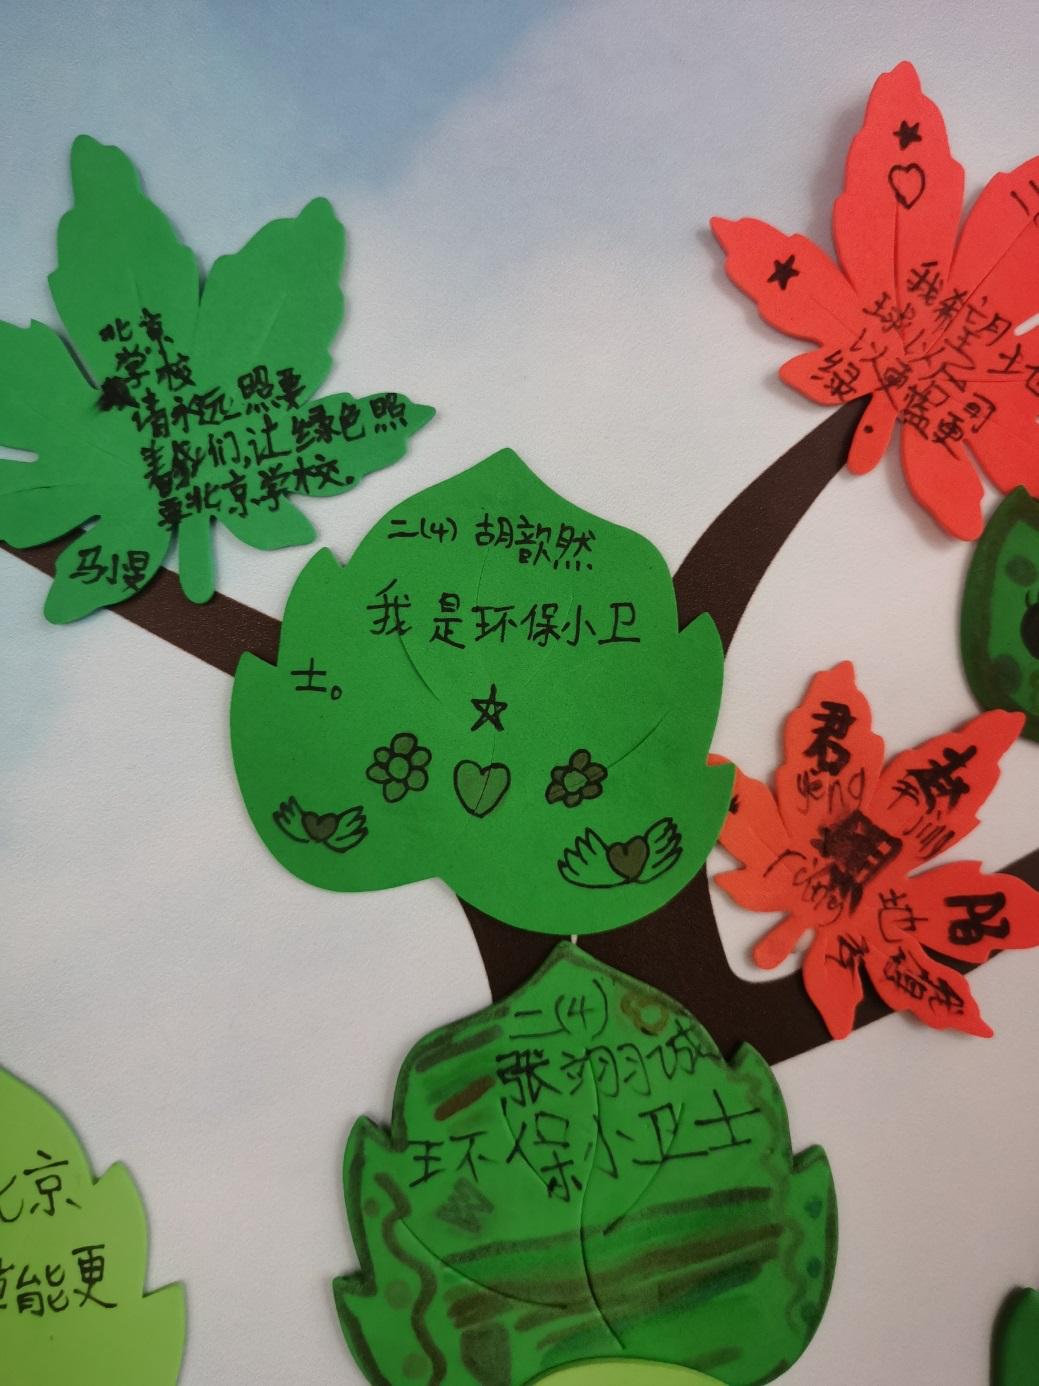 孩子们纷纷把自己的祝福和愿望写在树叶上,寄语绿色北京